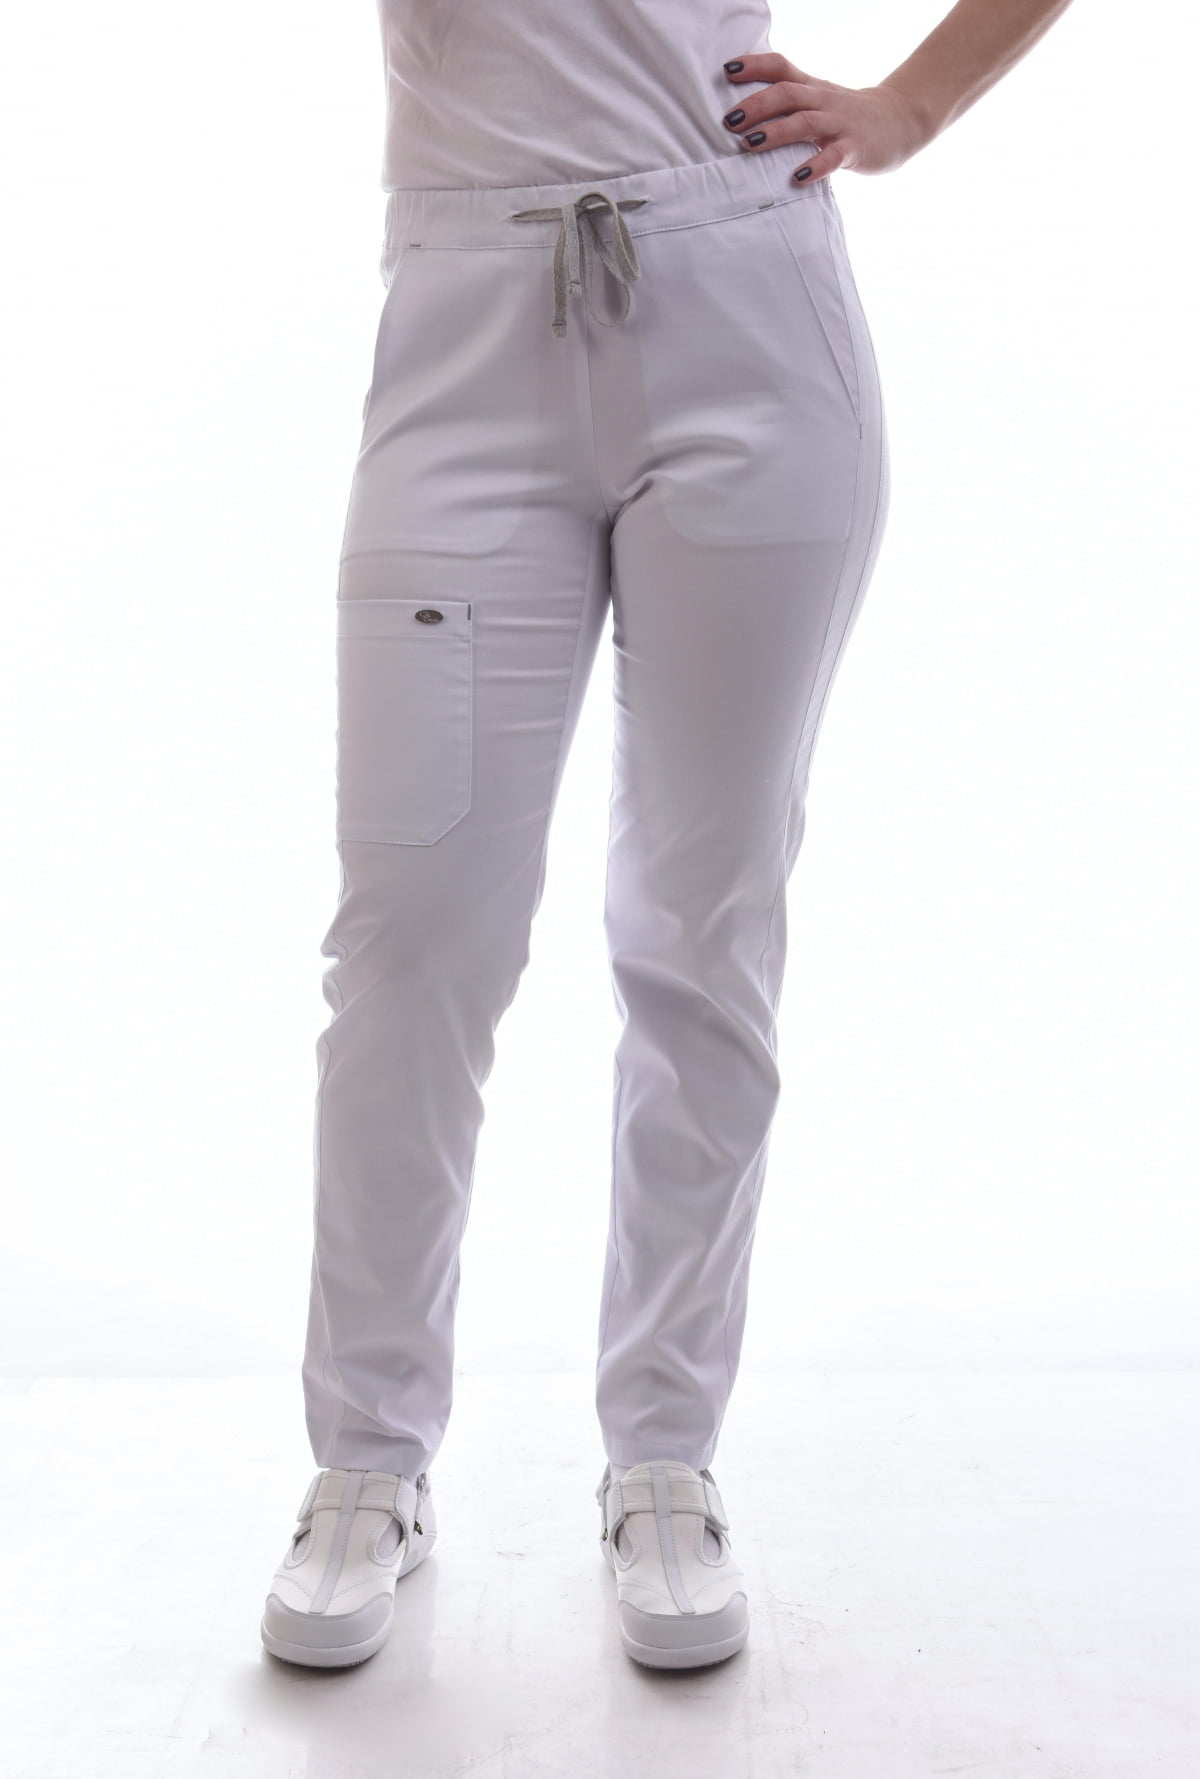 Медицинские брюки стрейч белые с боковыми карманами